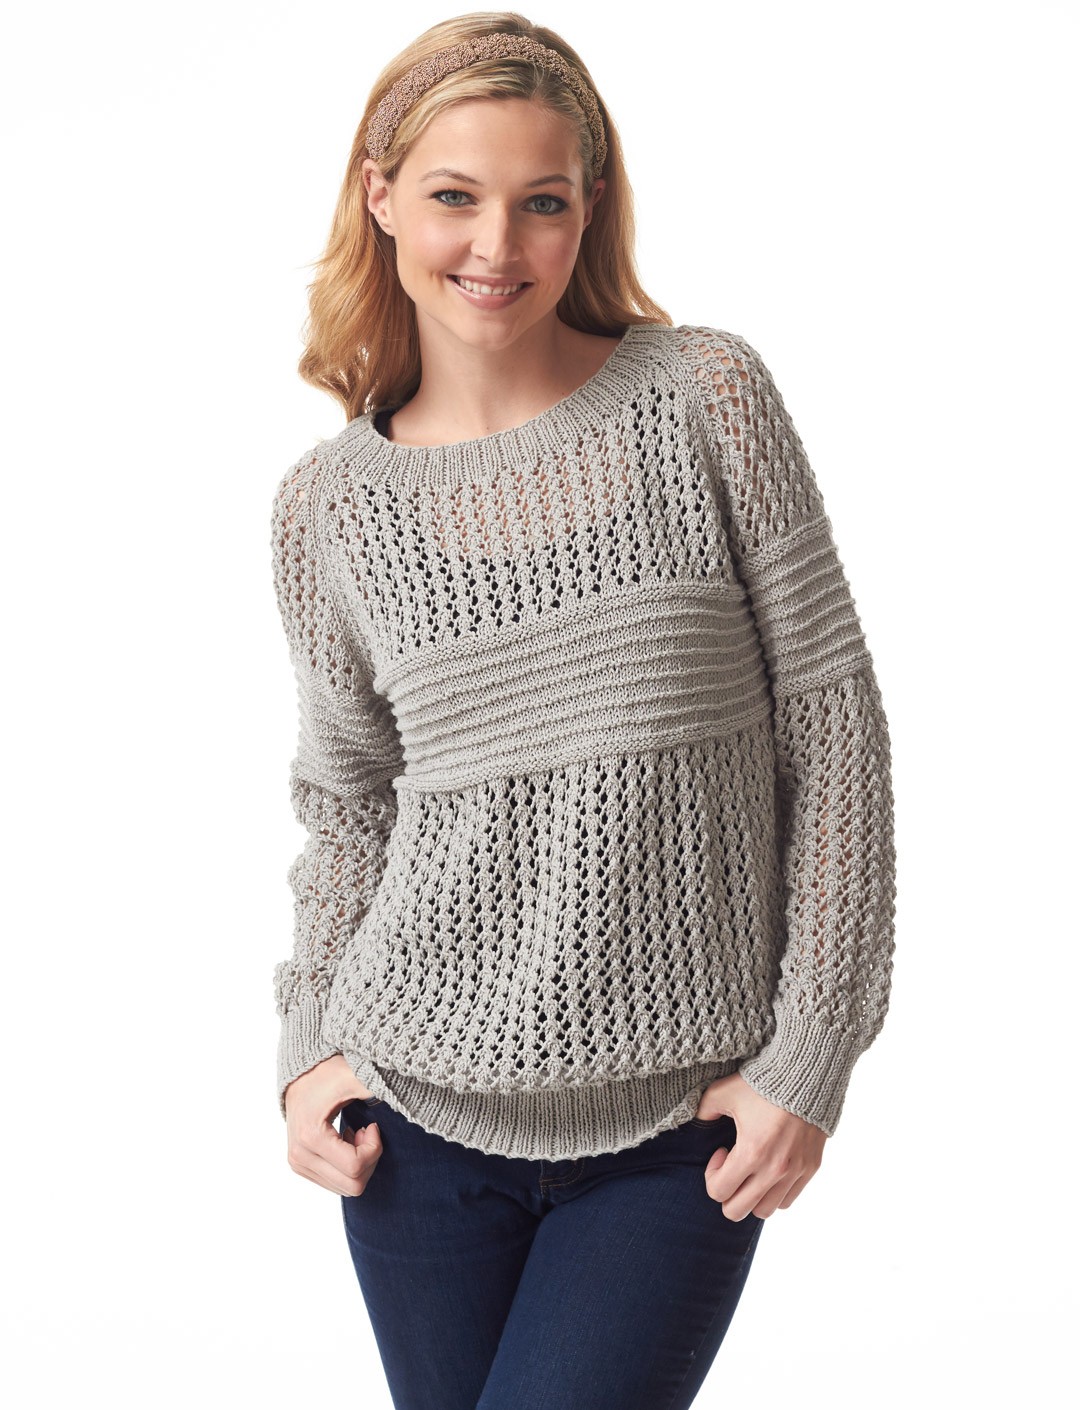 13 Light Sweater Knitting Patterns